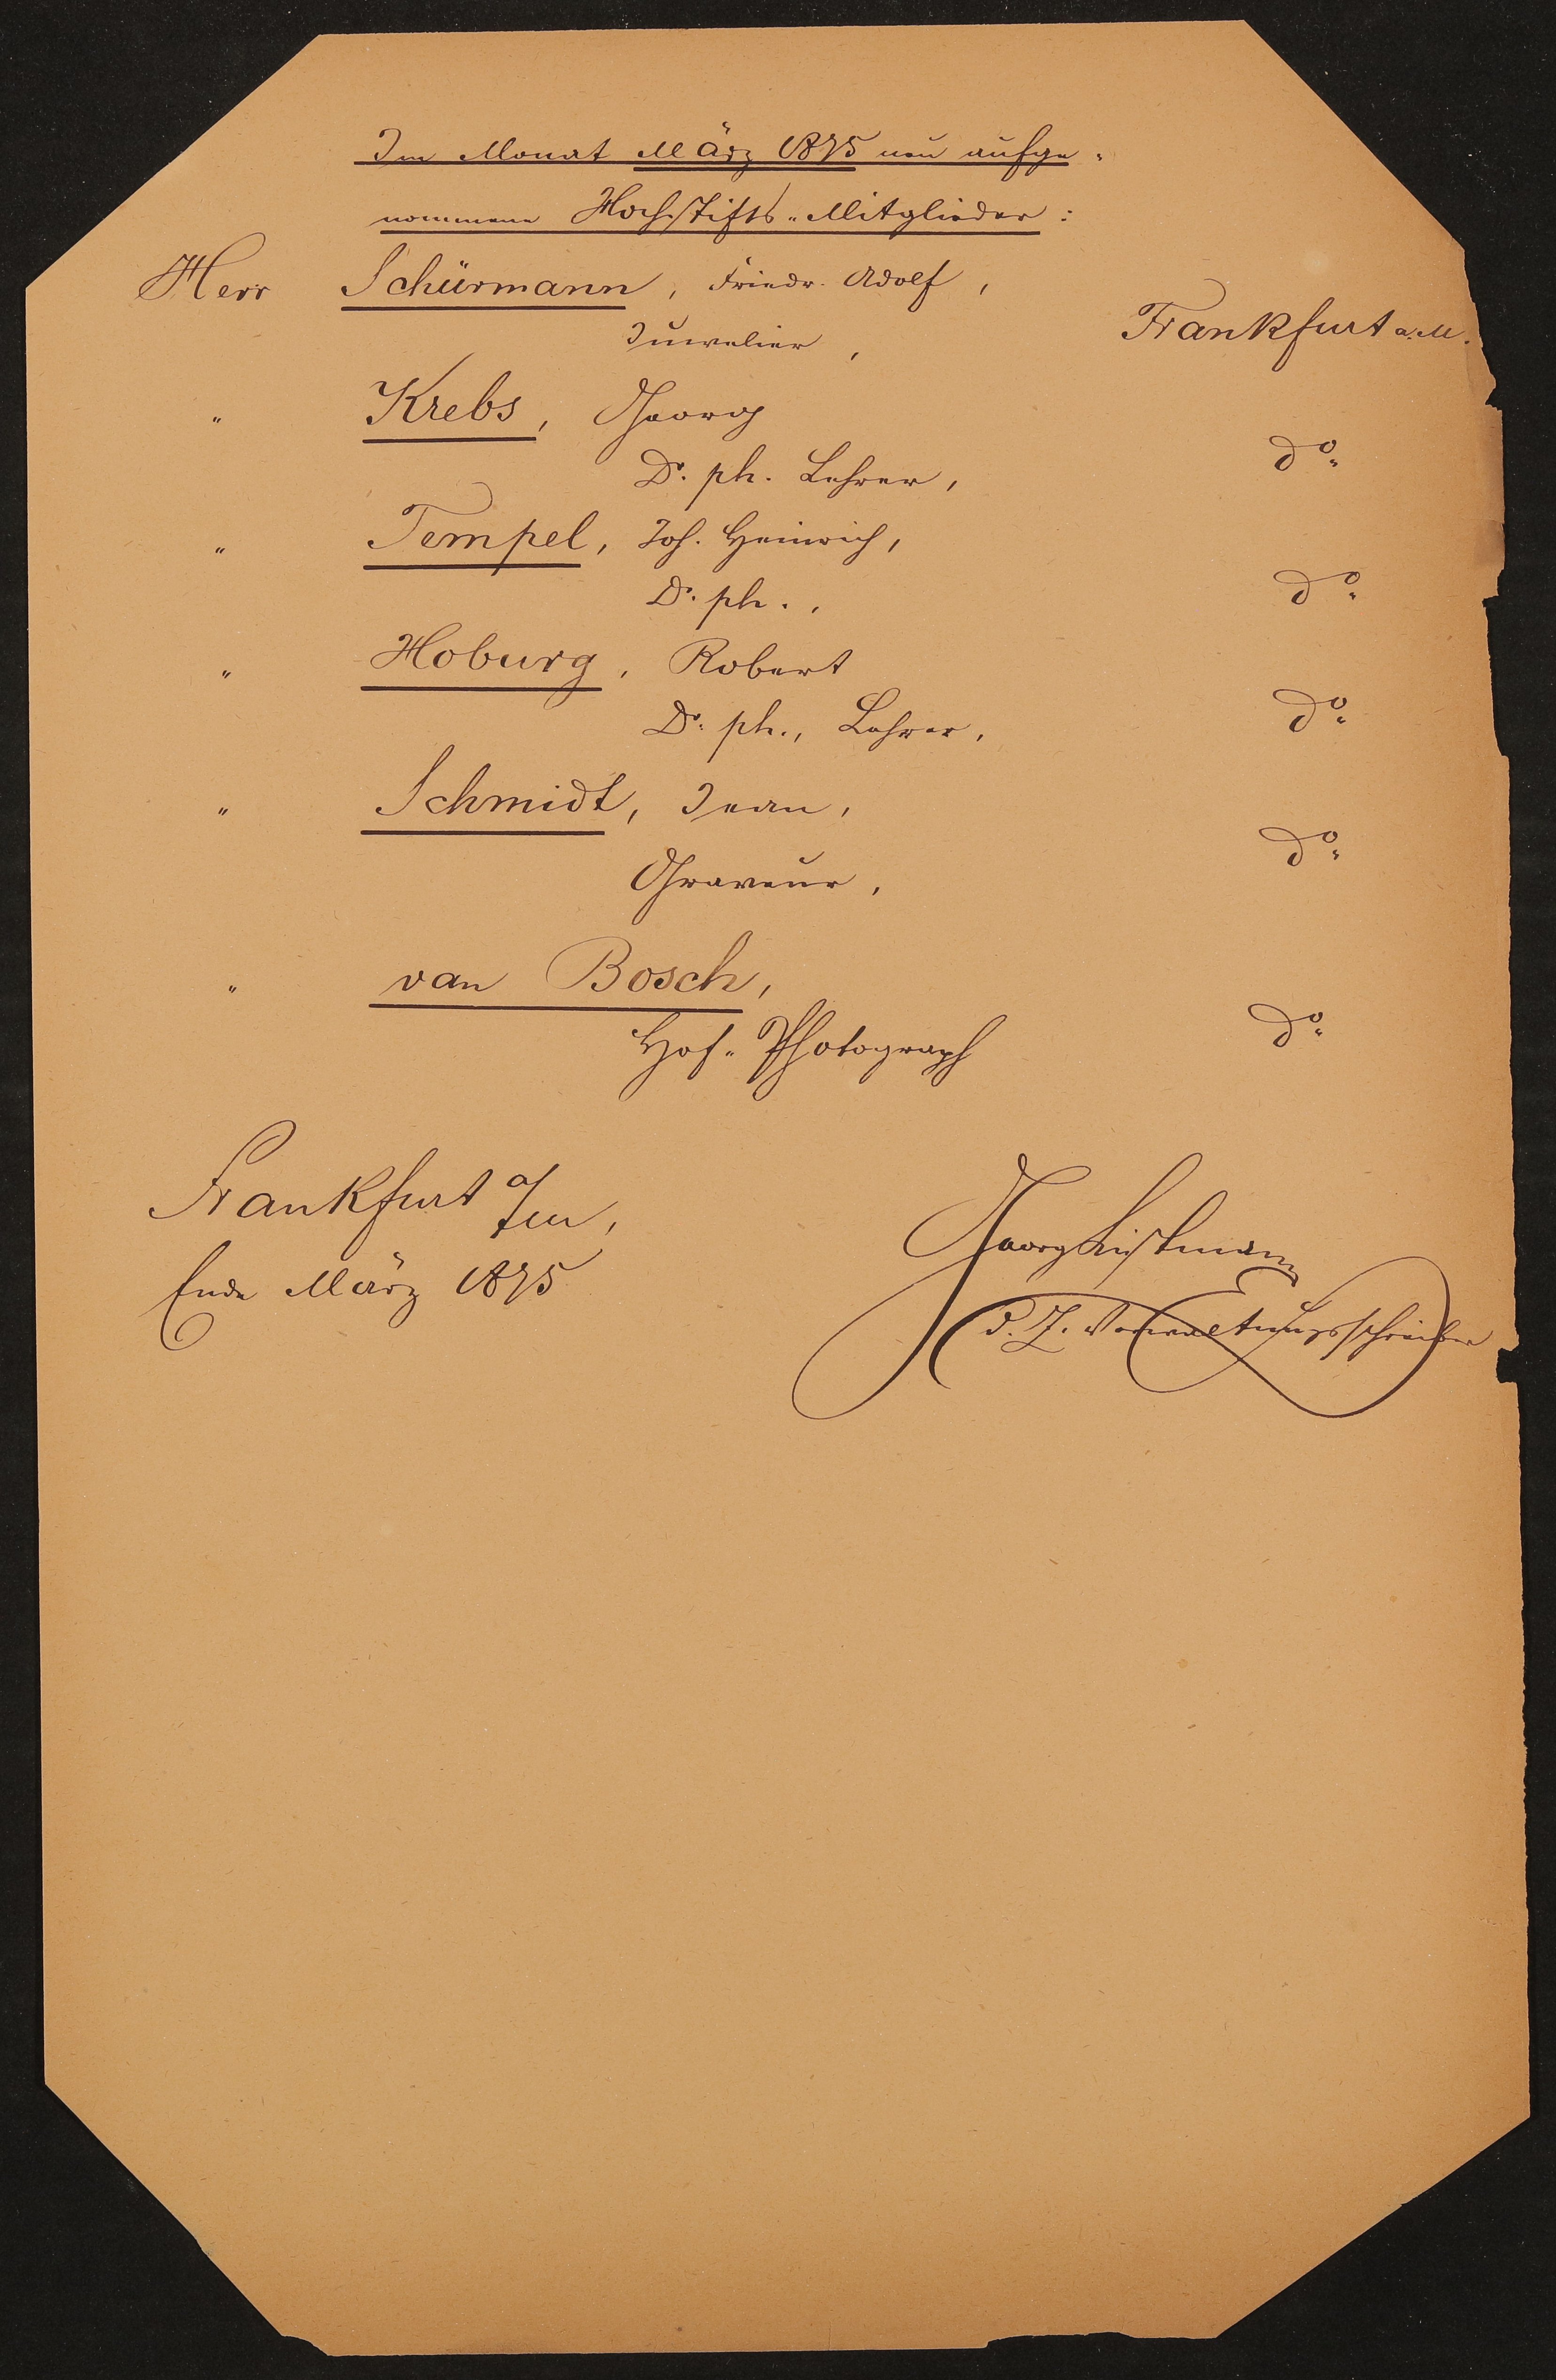 Liste "Im Monat März 1875 neu aufgenommene Hochstifts-Mitglieder" (Freies Deutsches Hochstift / Frankfurter Goethe-Museum Public Domain Mark)